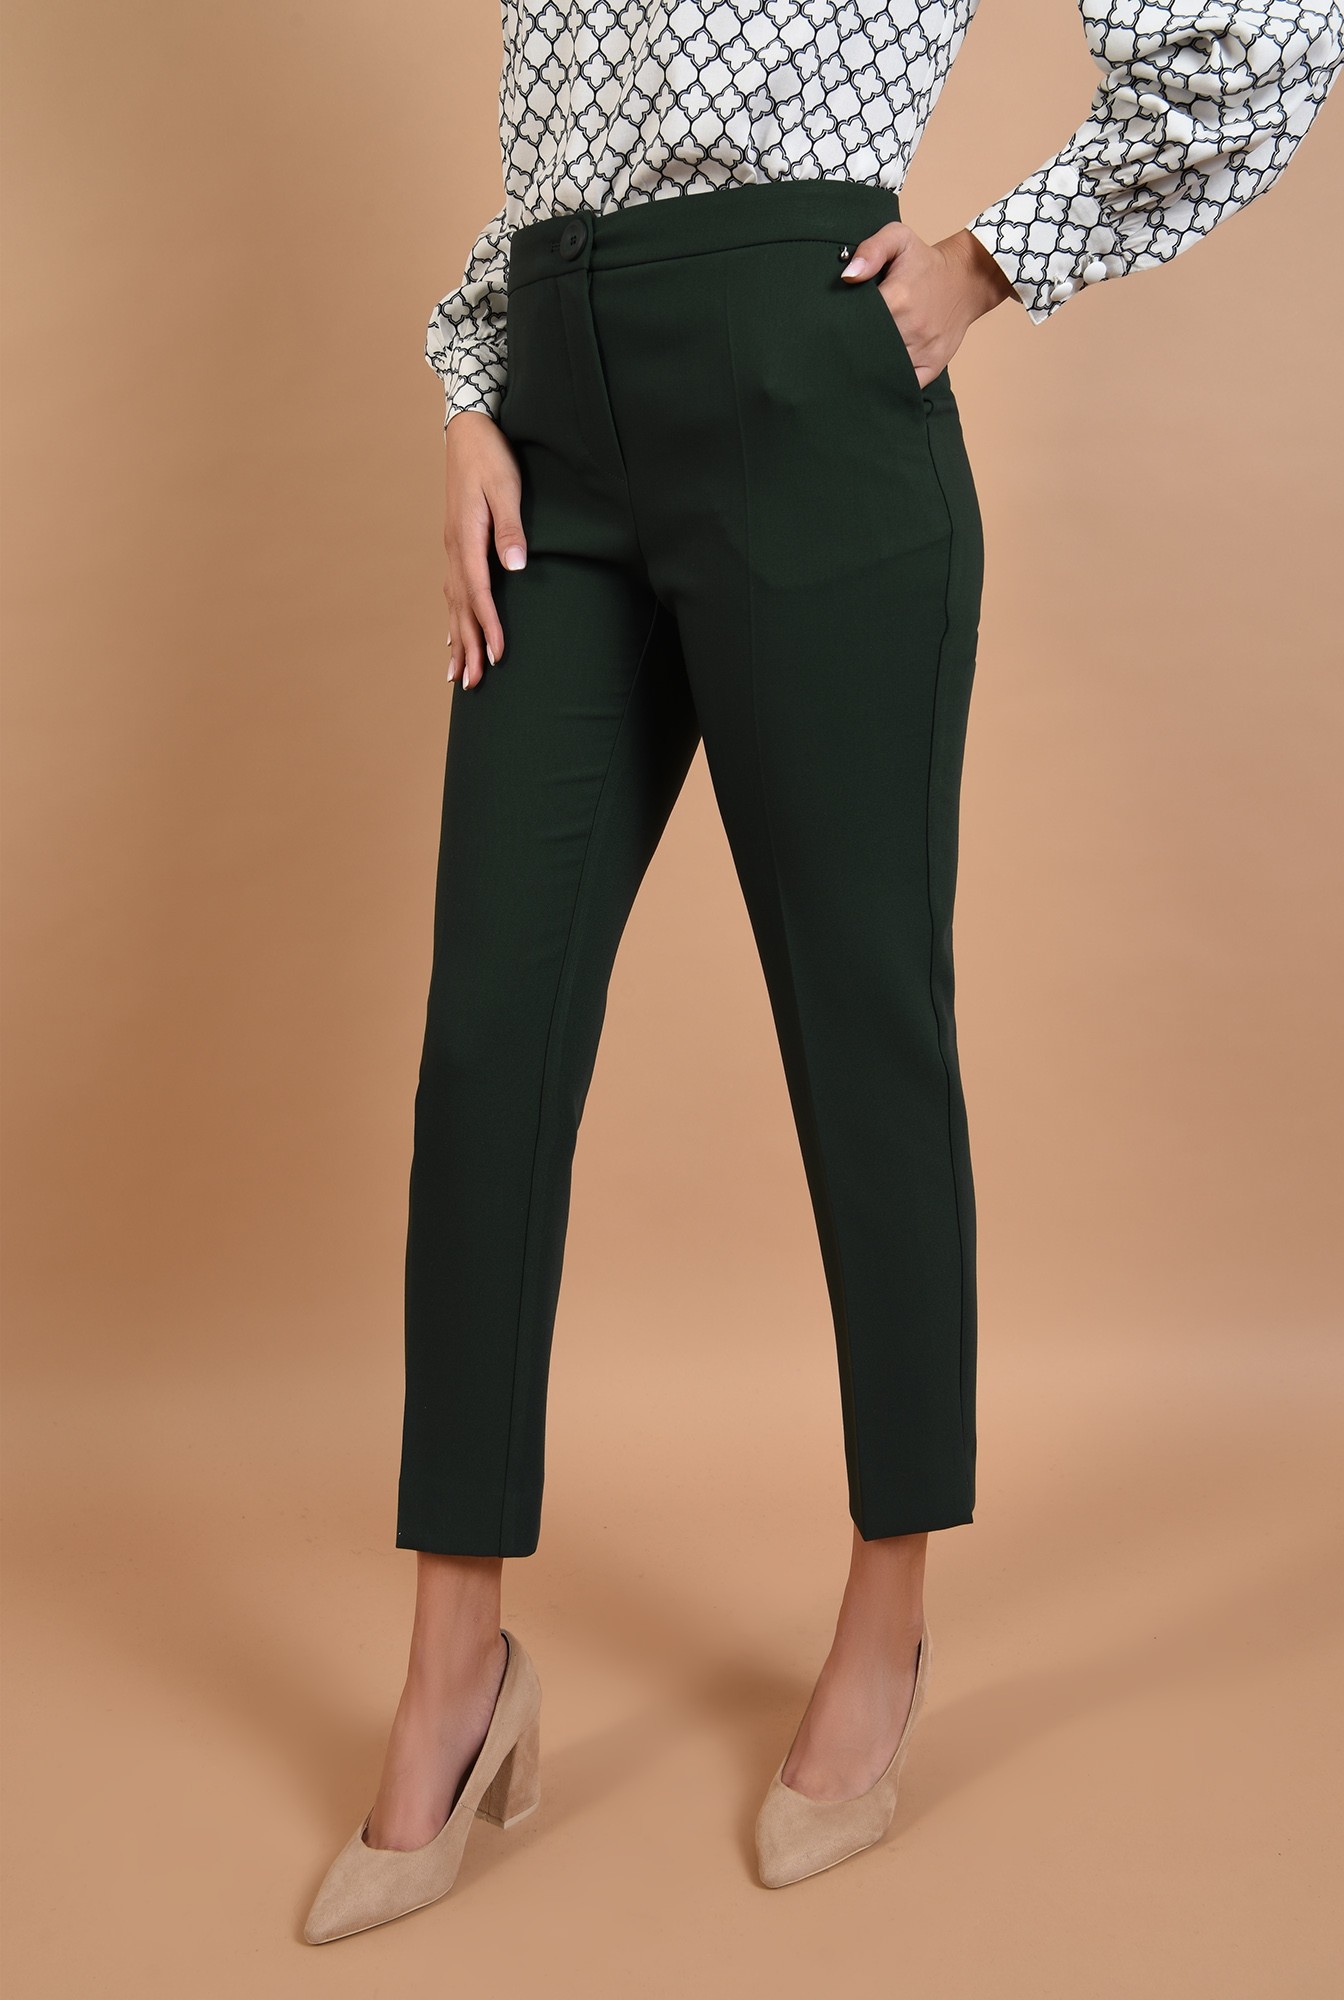 2 - 360 - pantaloni verzi, conici, cu buzunare, slit lateral